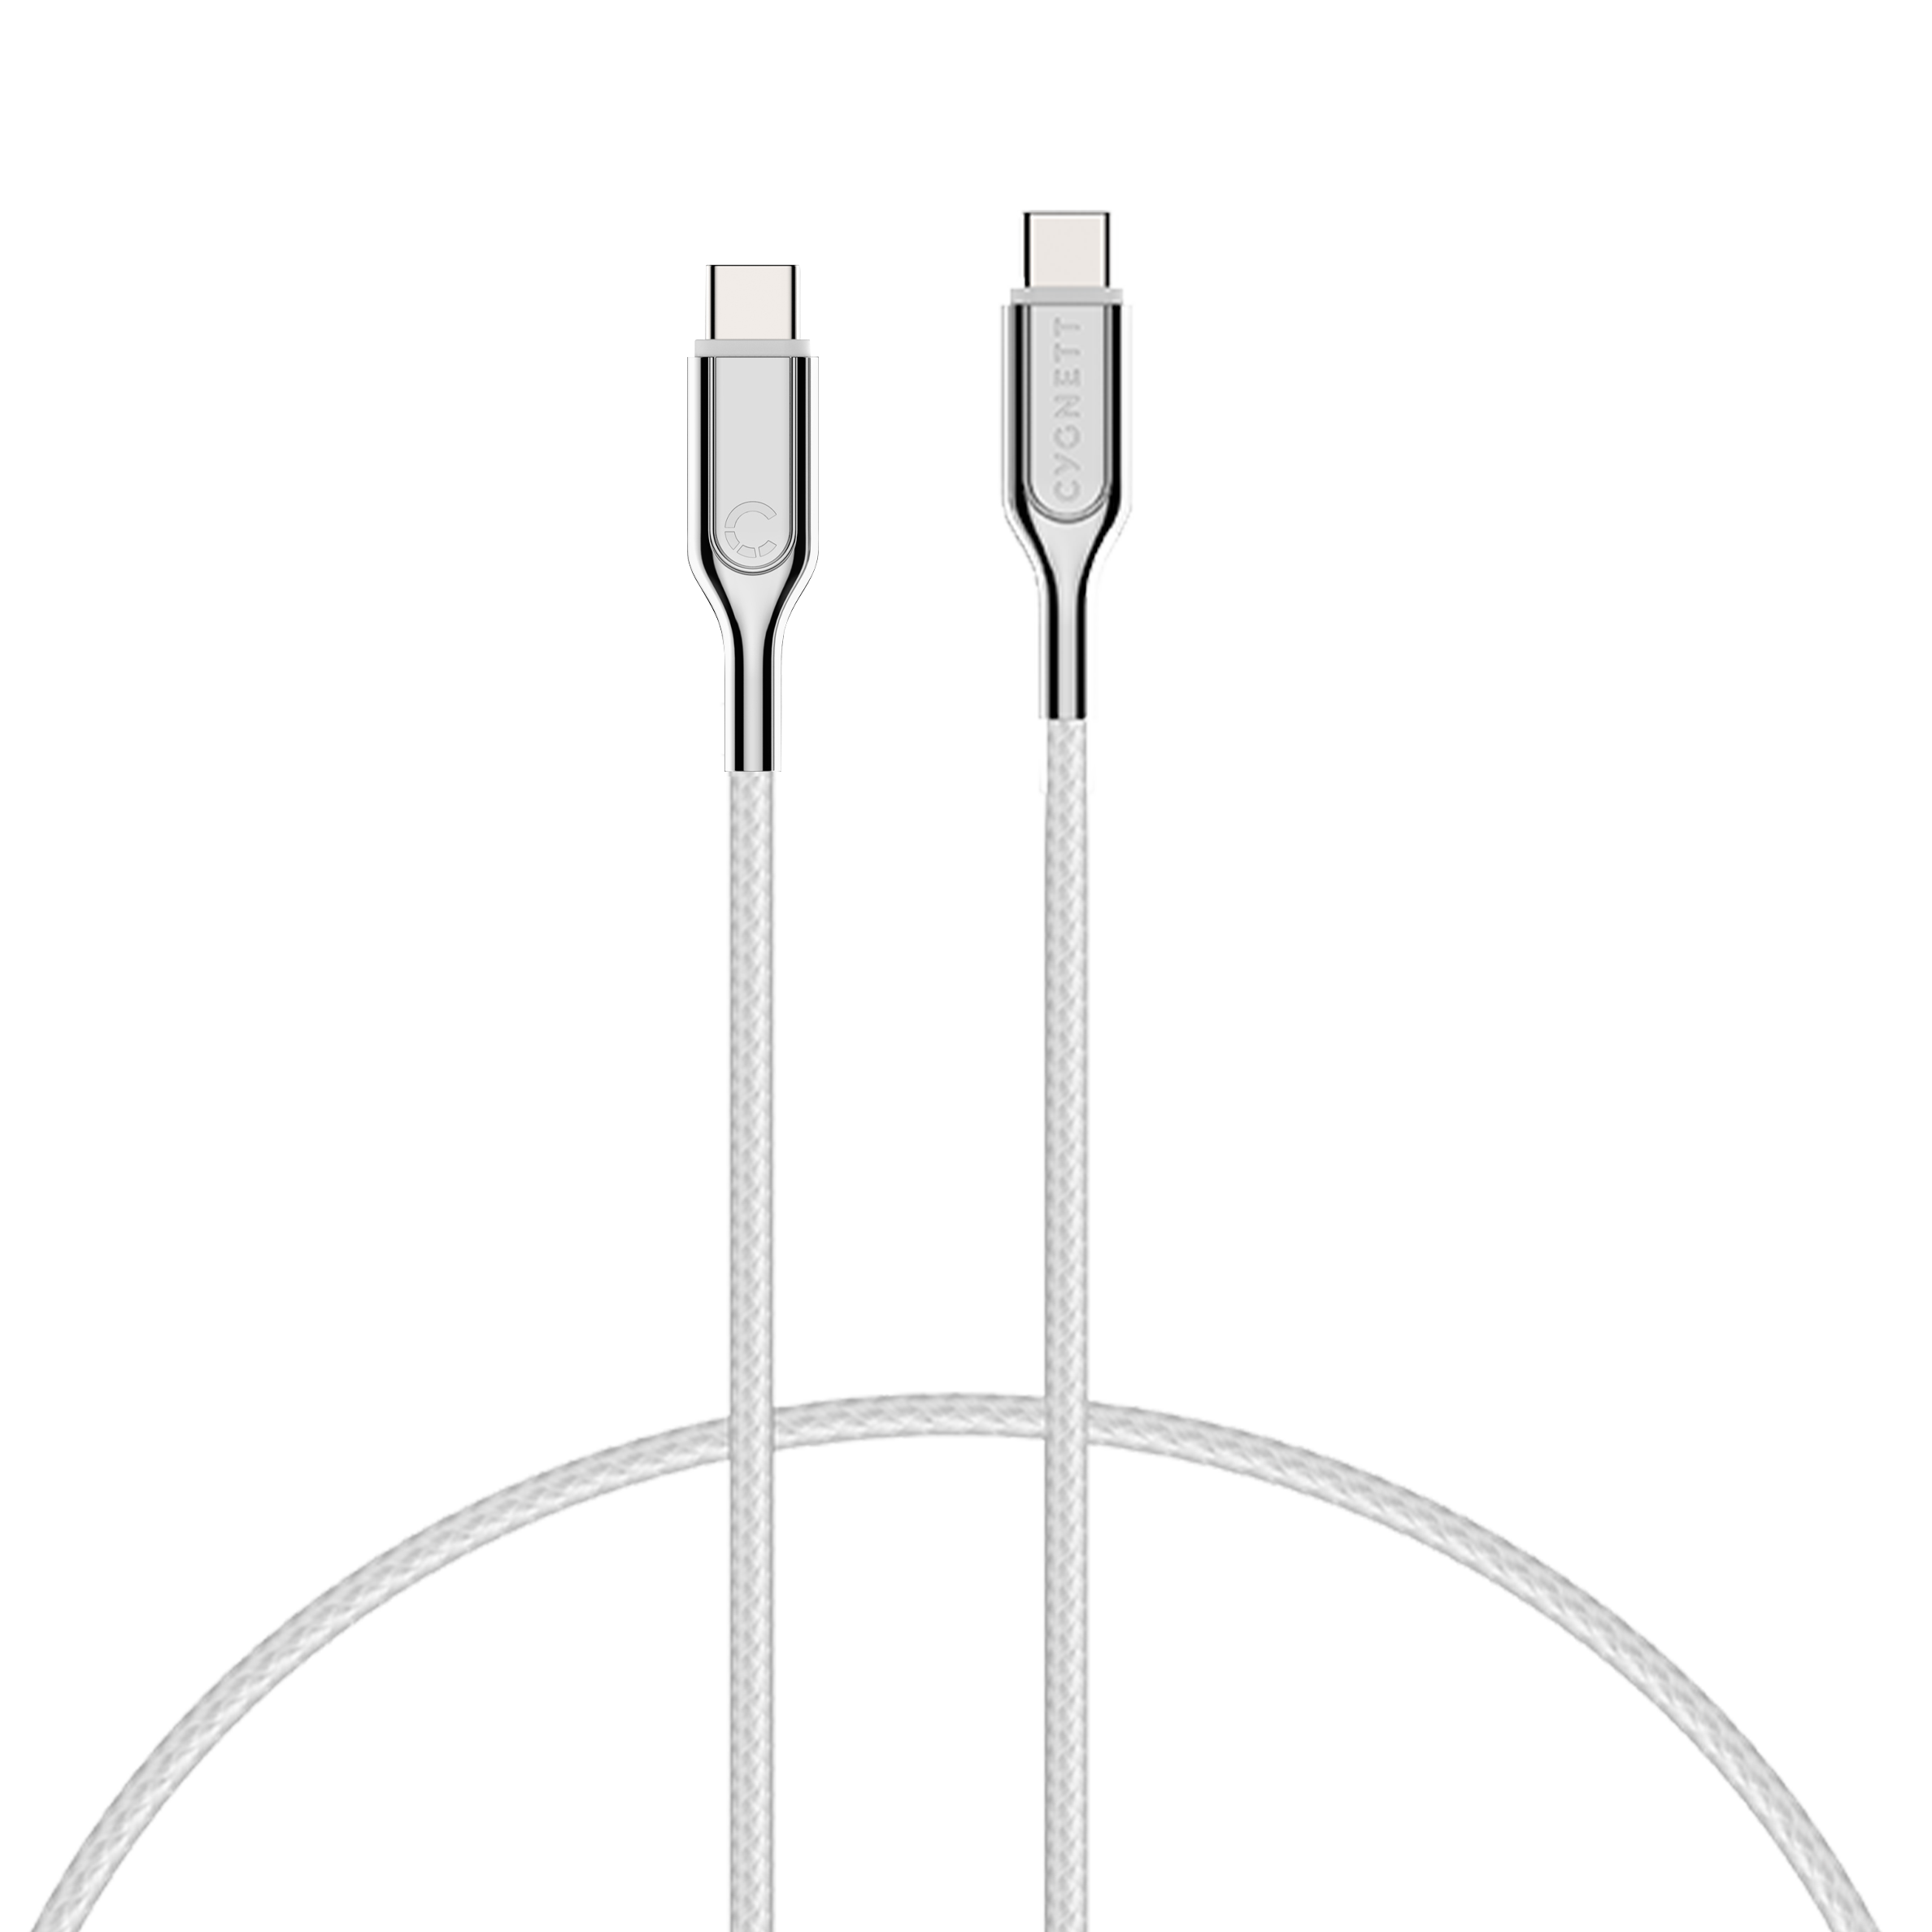 USB-C to USB-C (USB 2.0) Cable - White 1m - Cygnett (AU)